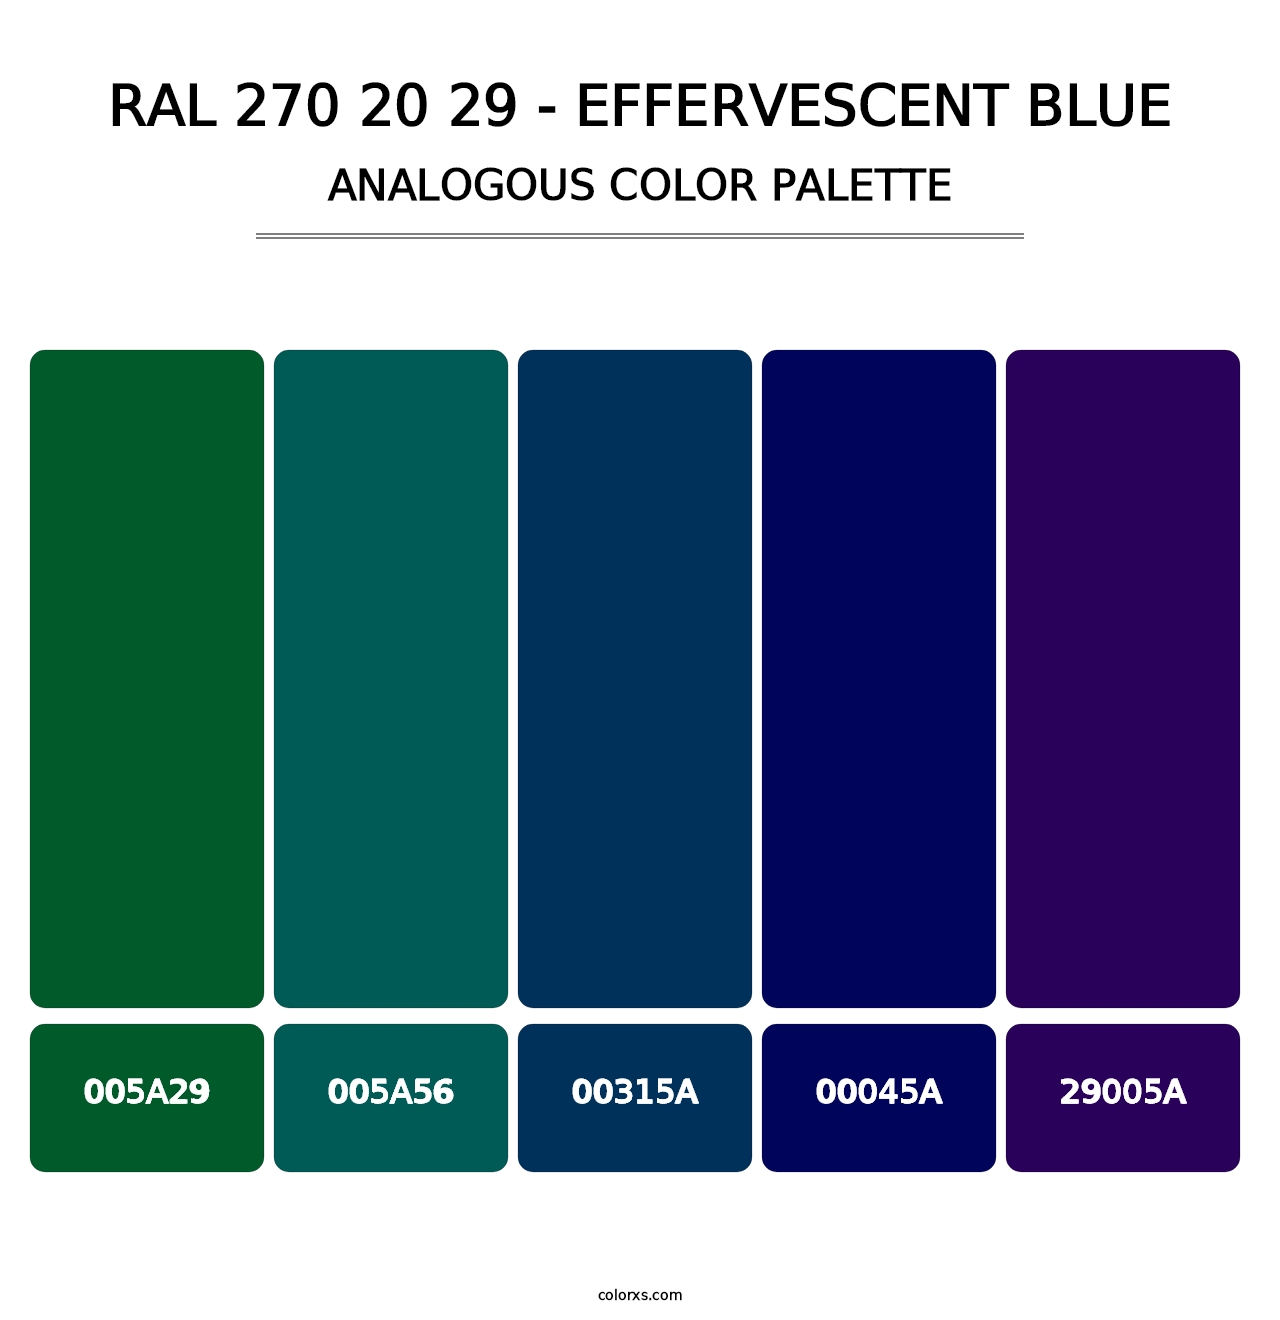 RAL 270 20 29 - Effervescent Blue - Analogous Color Palette